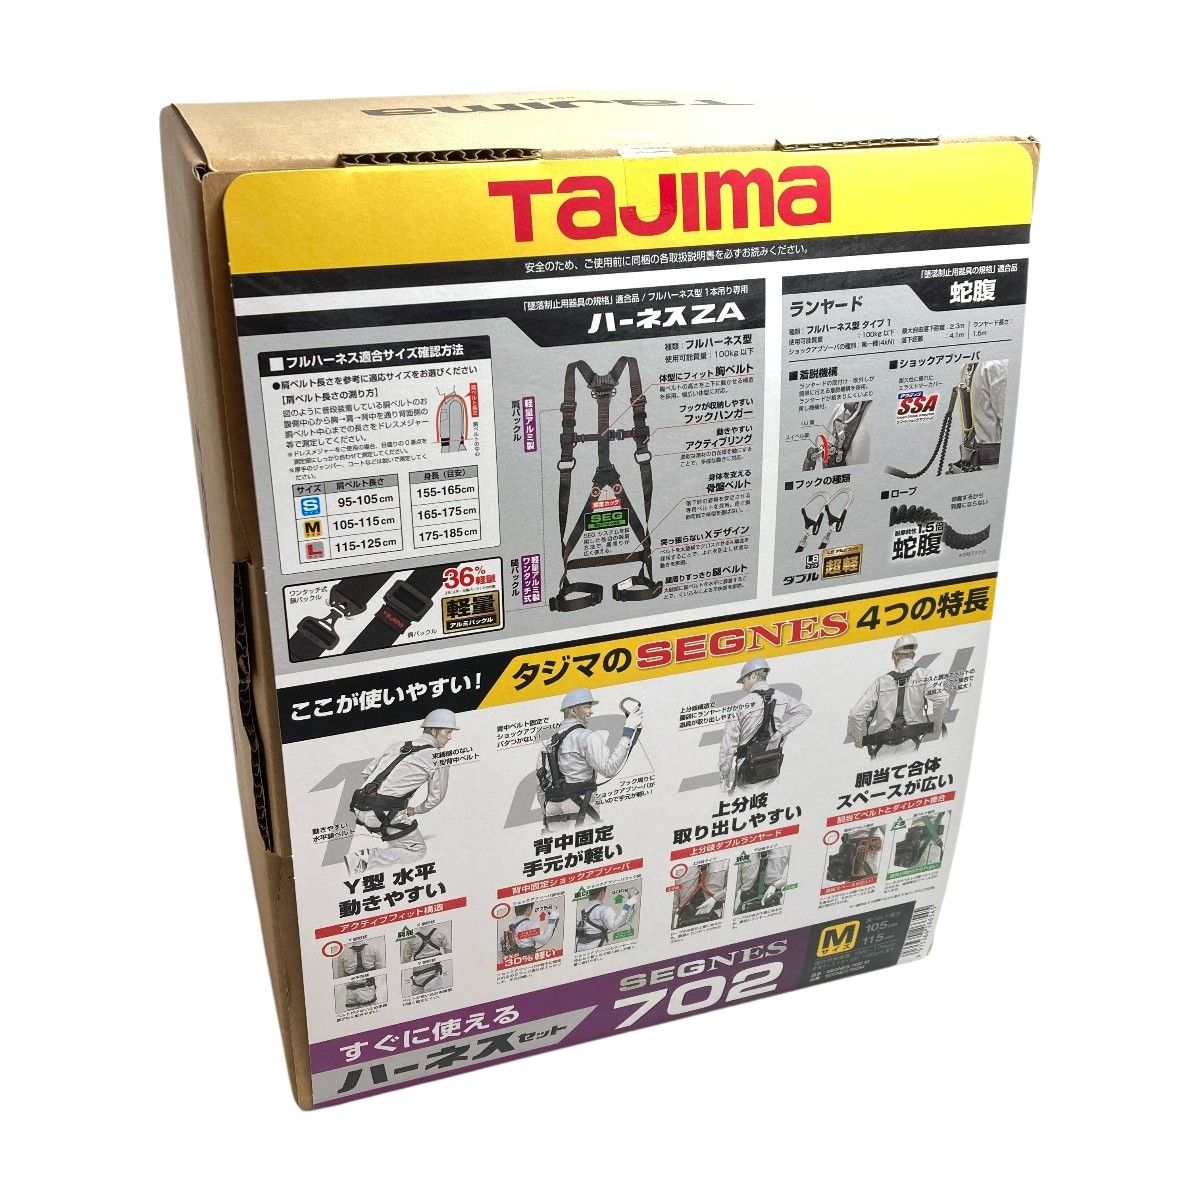 ＊＊TAJIMA タジマ  フルハーネス型安全帯 セグネス 702 M ランヤード分離型セット 新規格 SEGNES702M ブラック